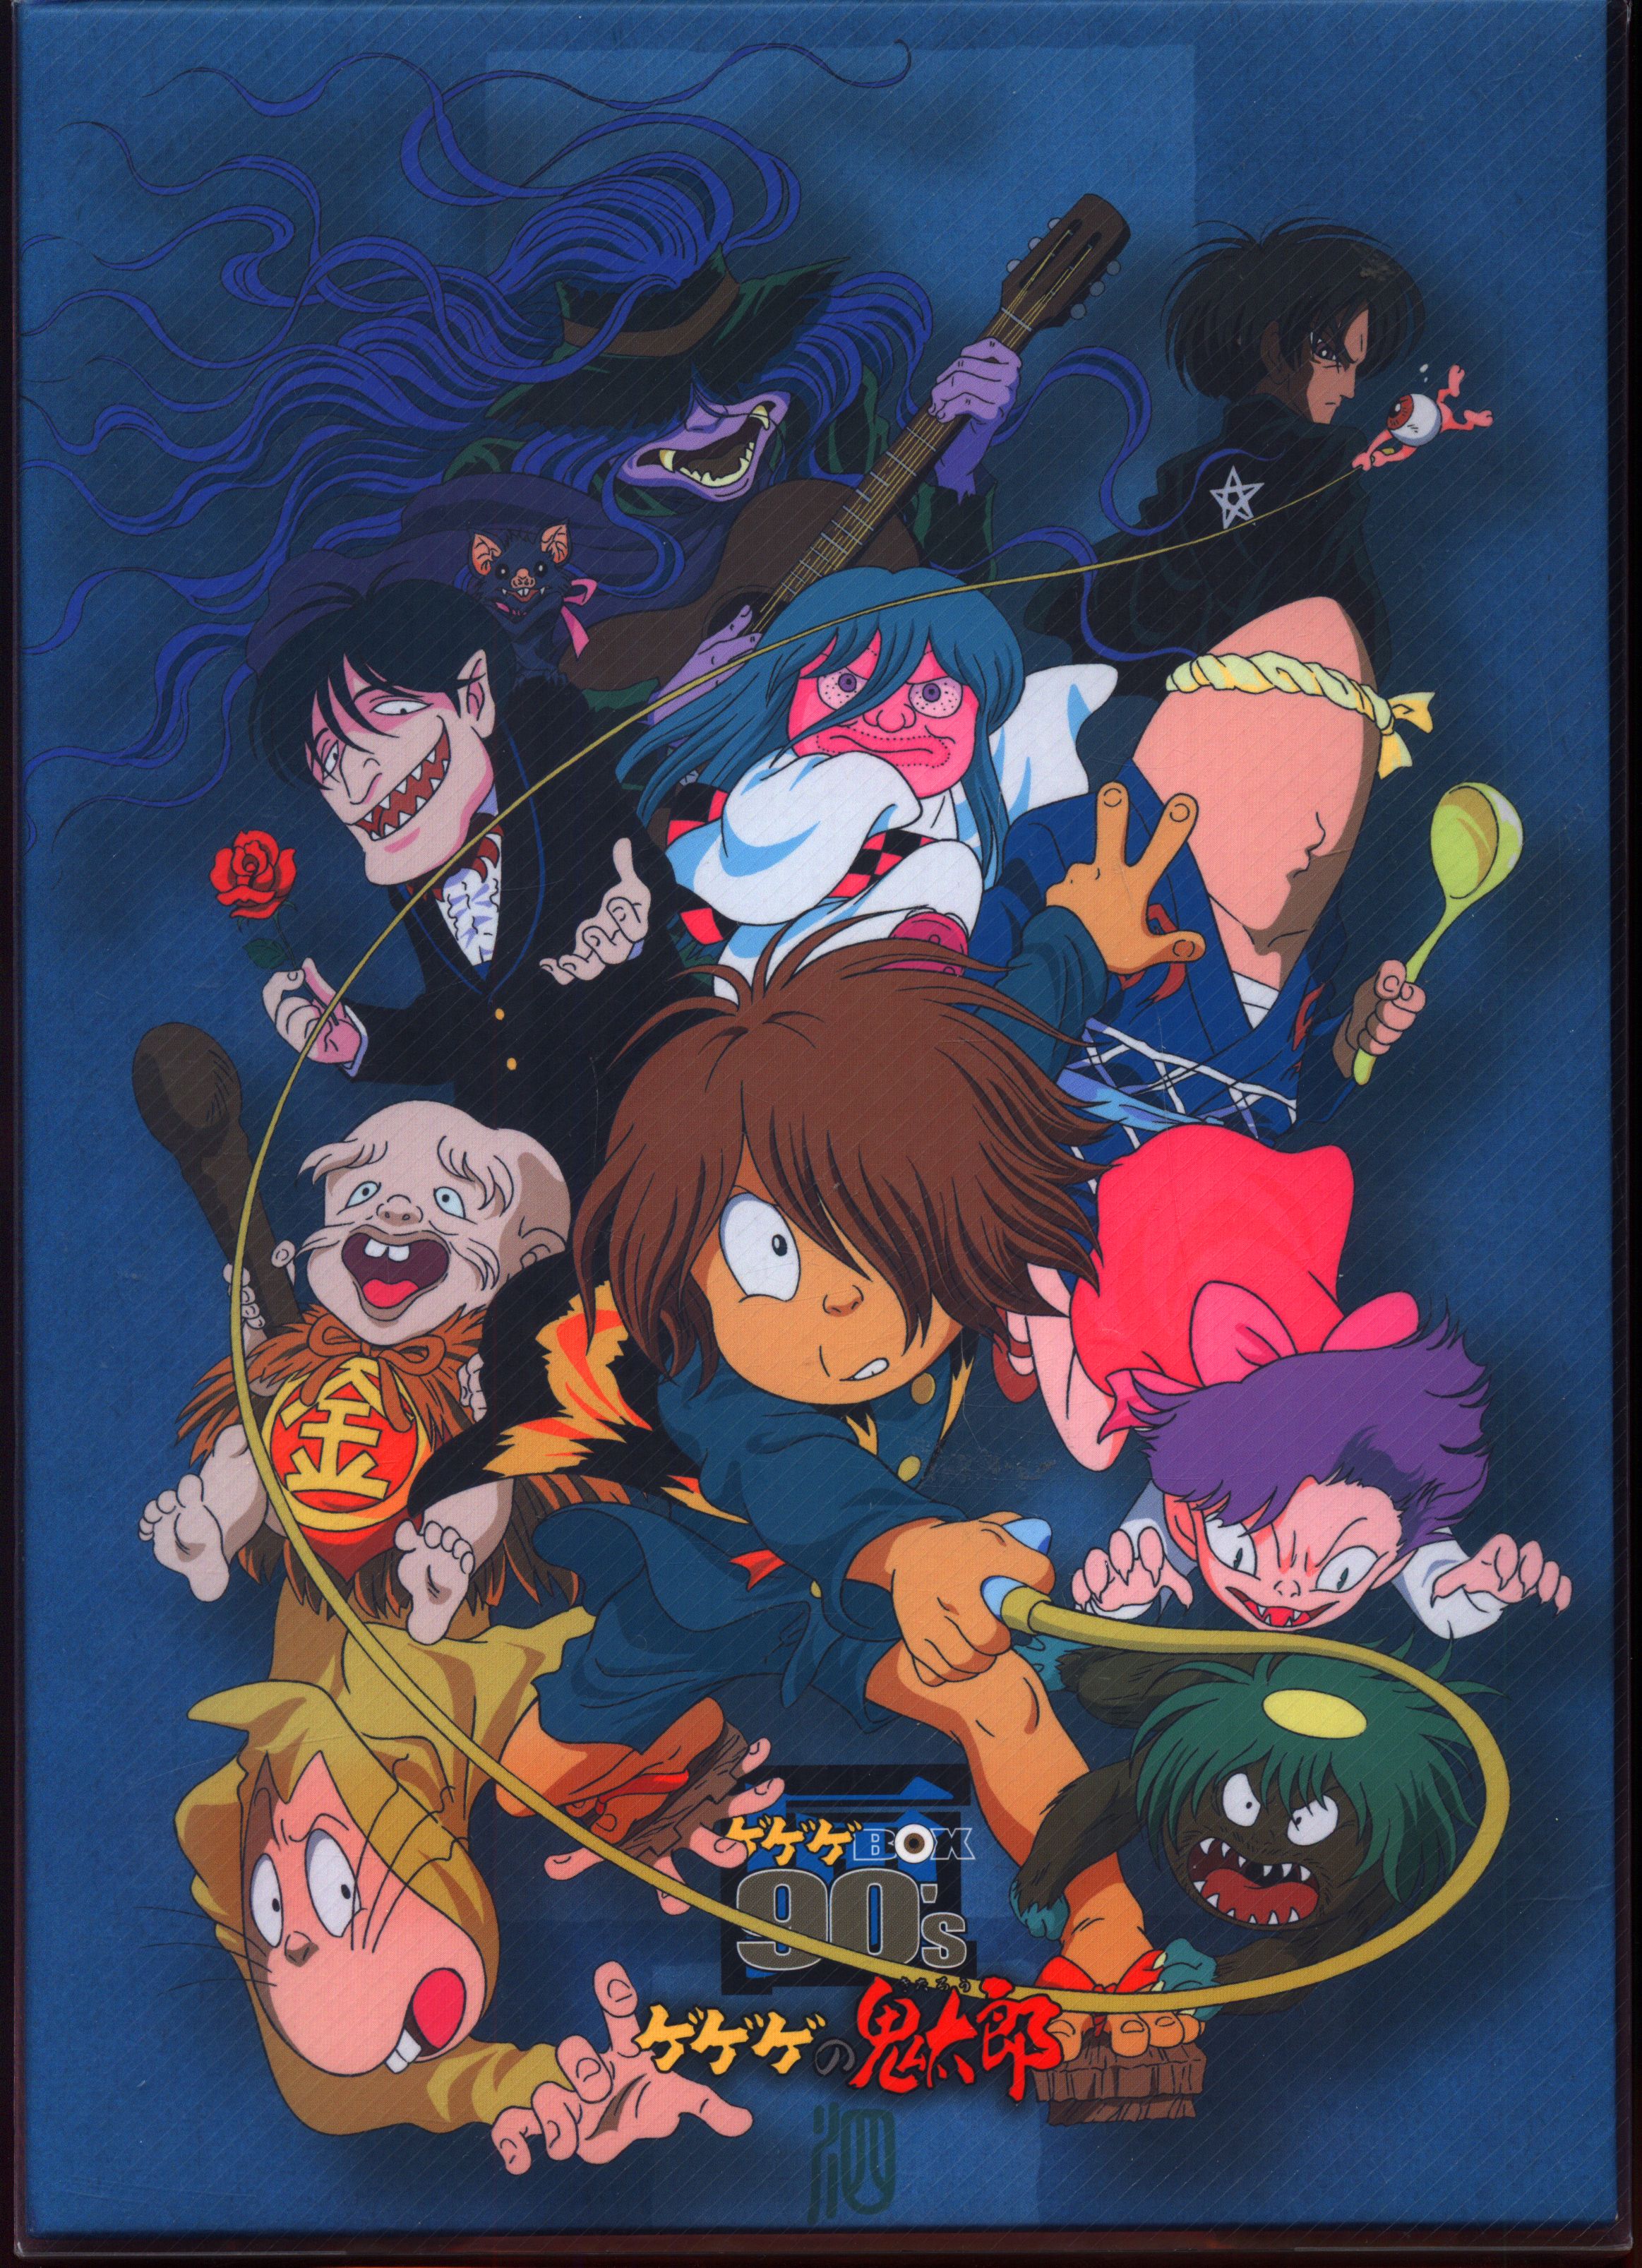 ゲゲゲの鬼太郎1996 DVD-BOX ゲゲゲBOX90's〈完全予約限定生産…松岡洋子